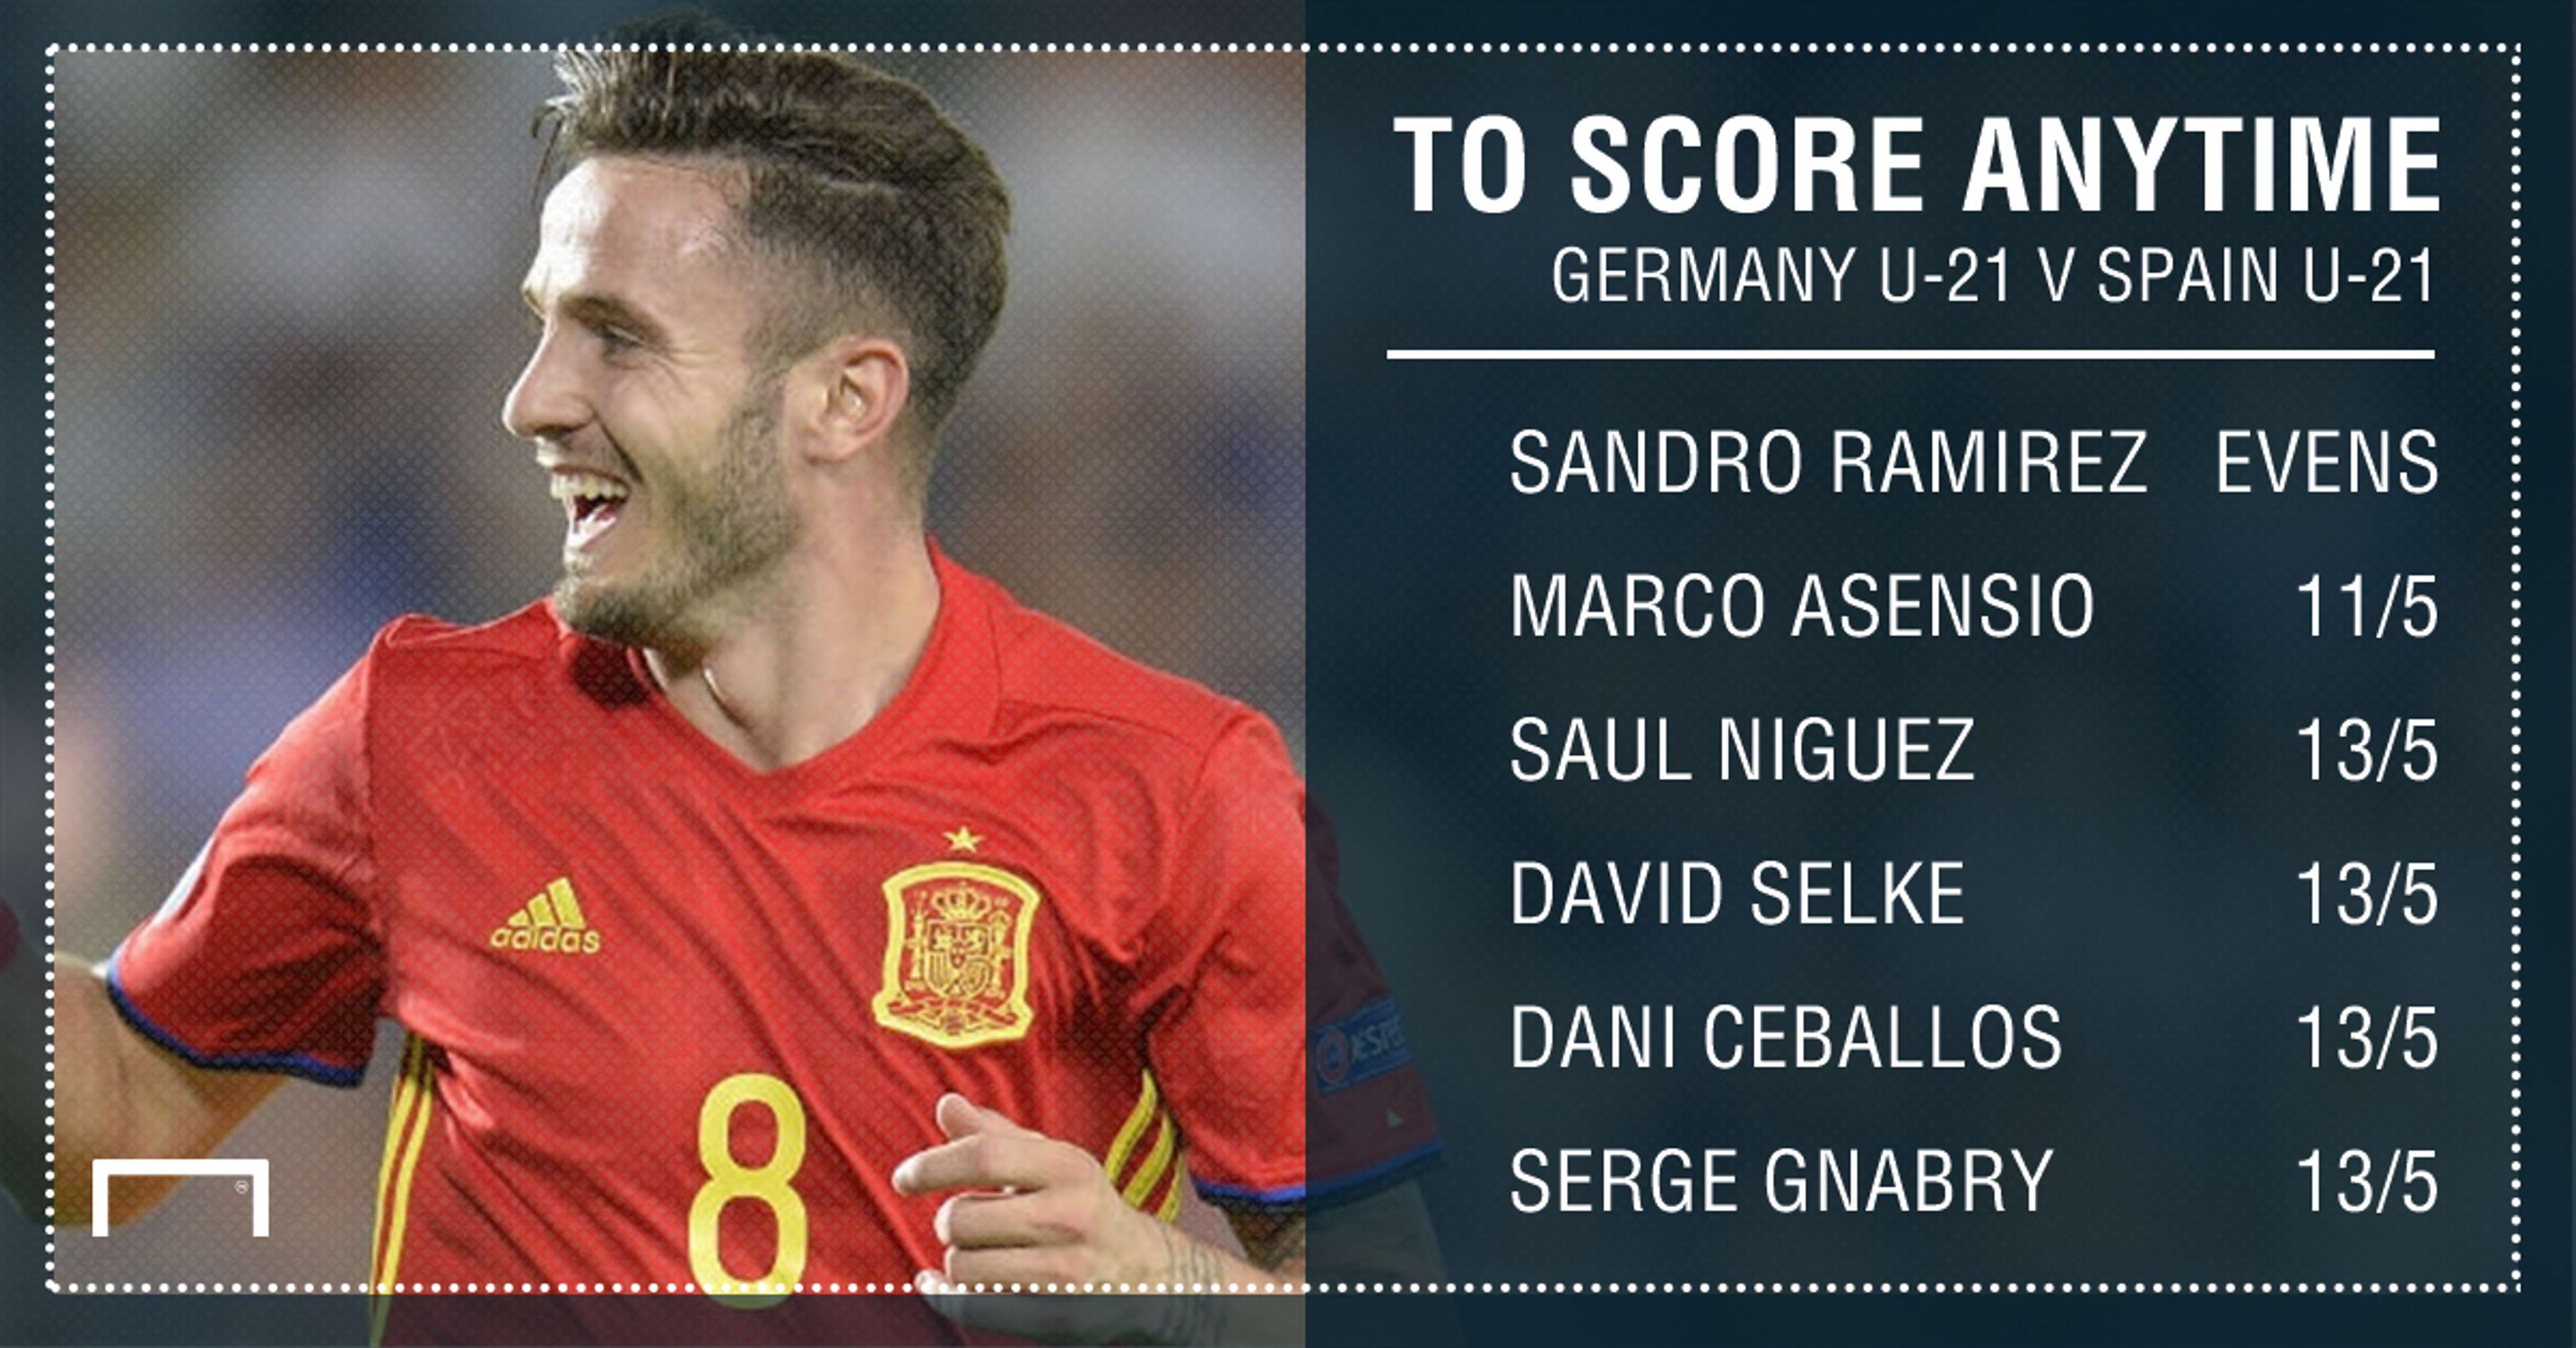 GFX Germany Spain U-21 scorer betting